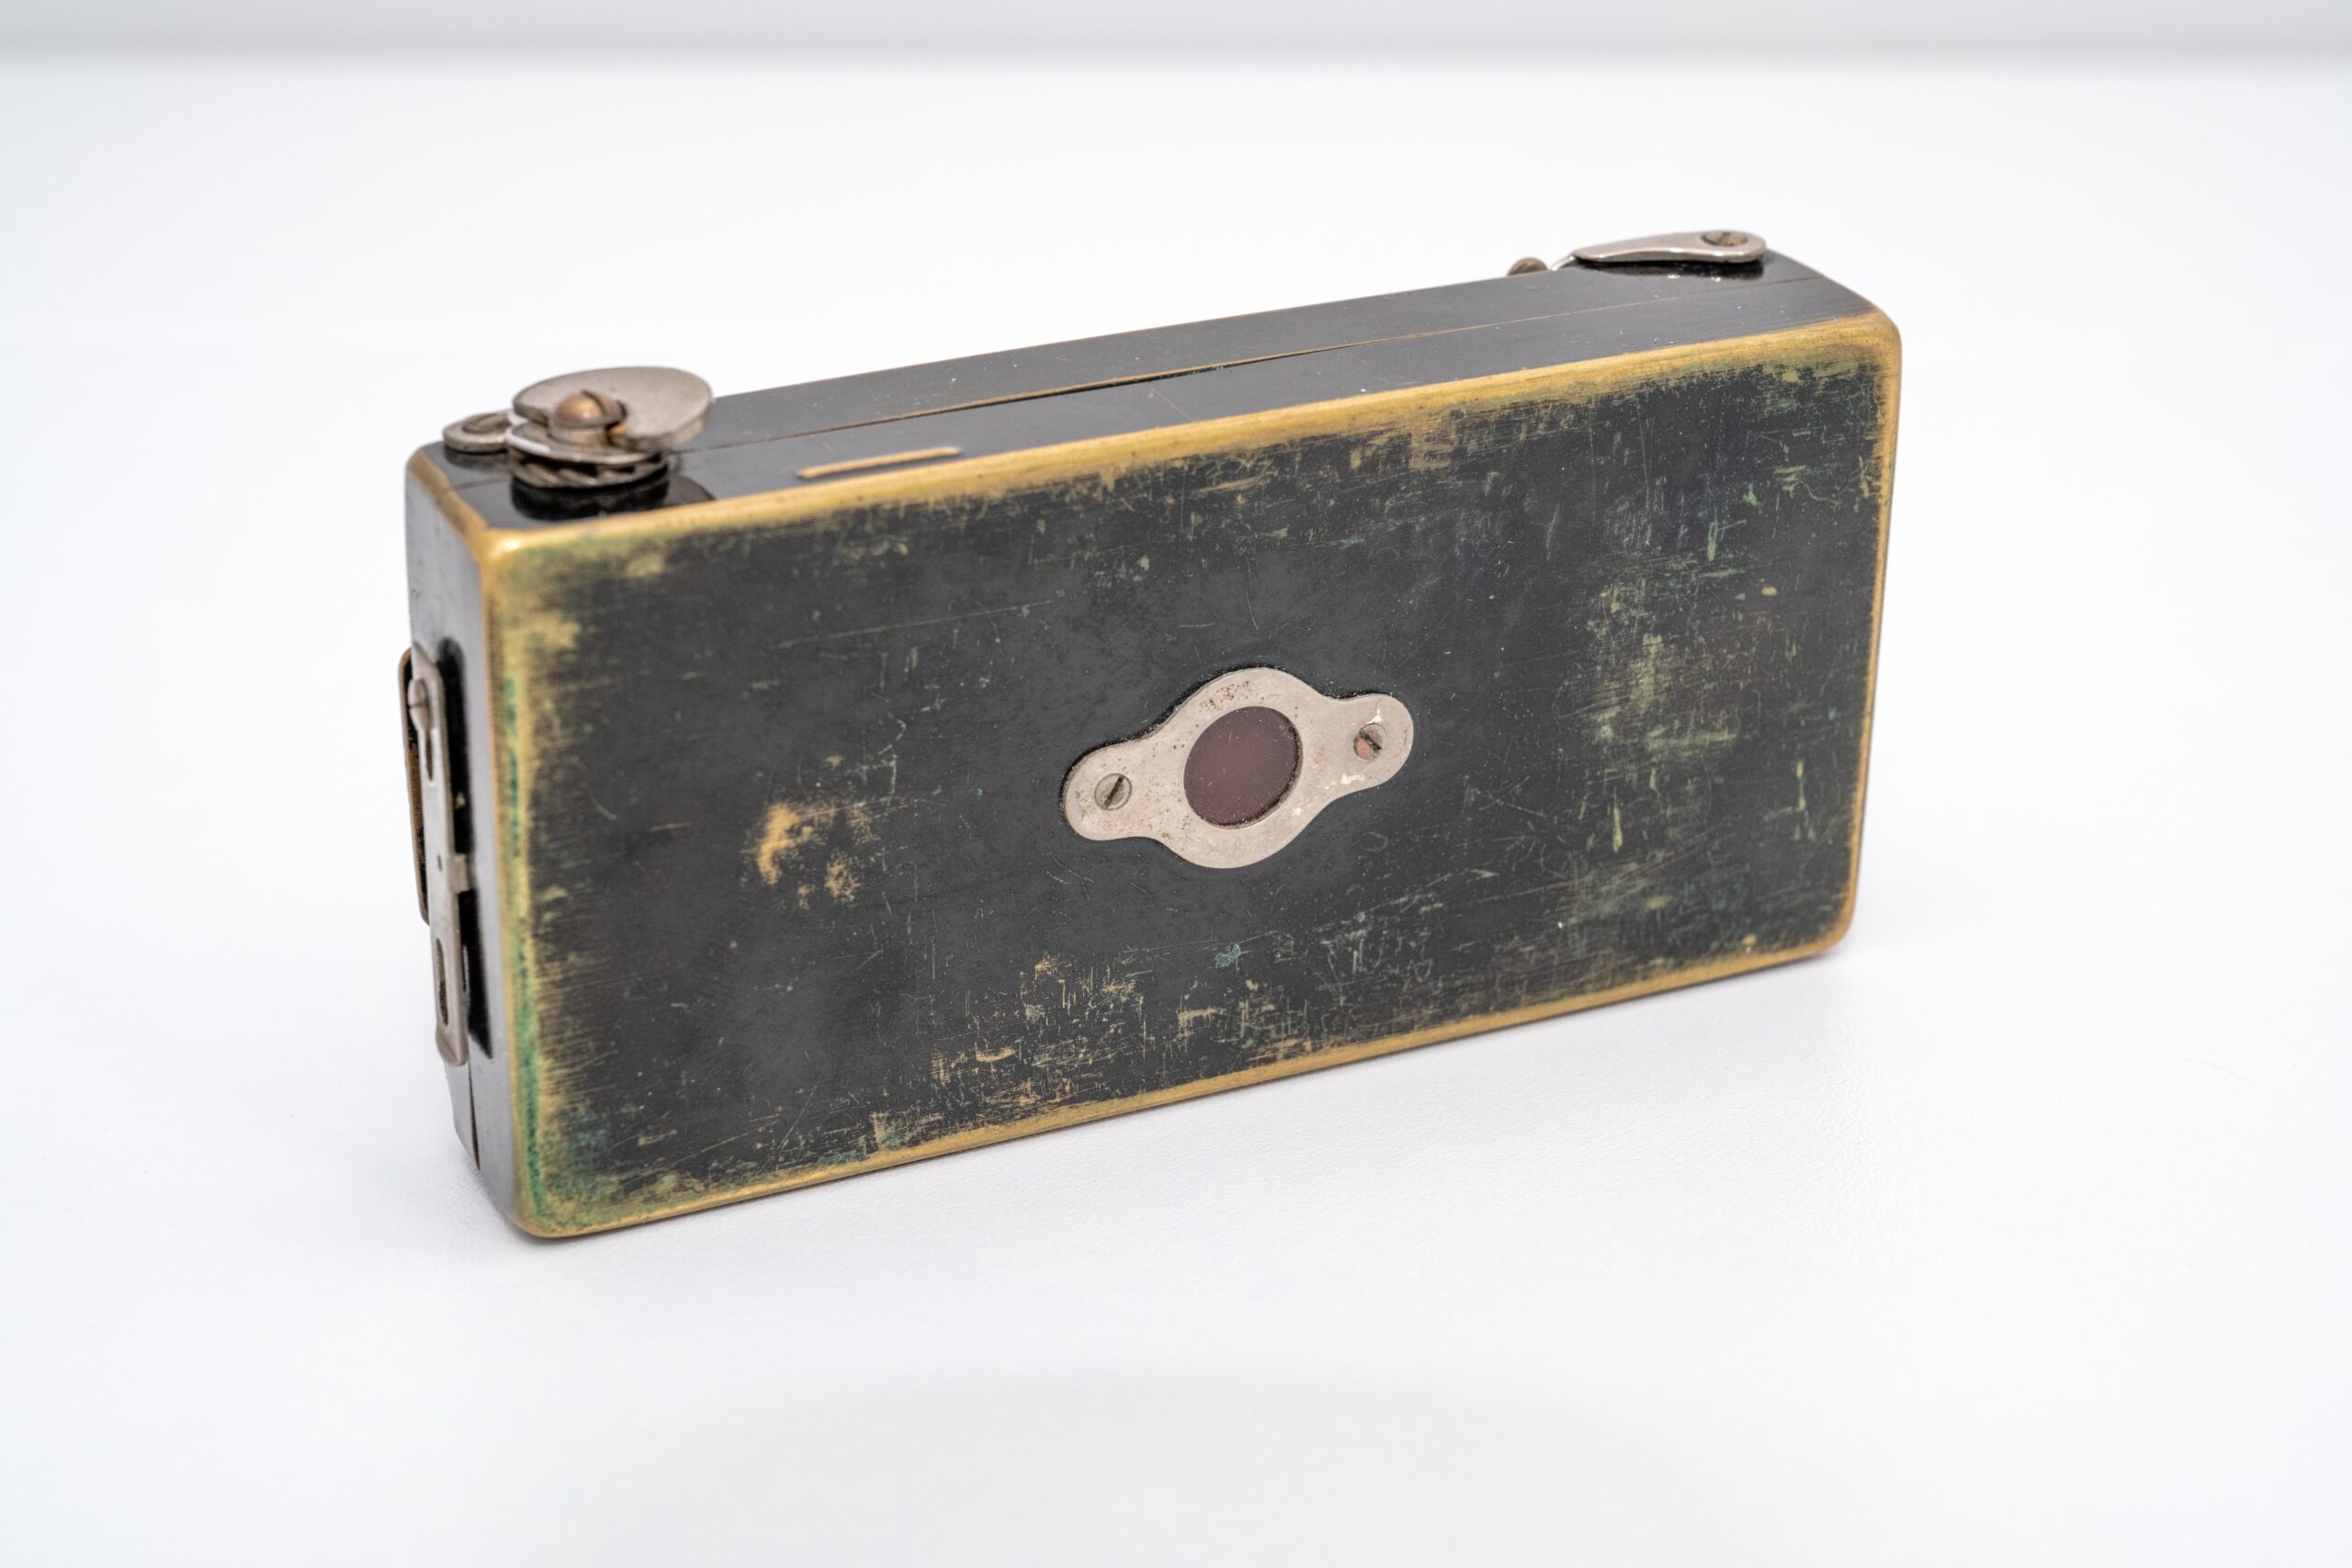 Cooke Anastigmat Ensignette roll film antique camera for sale